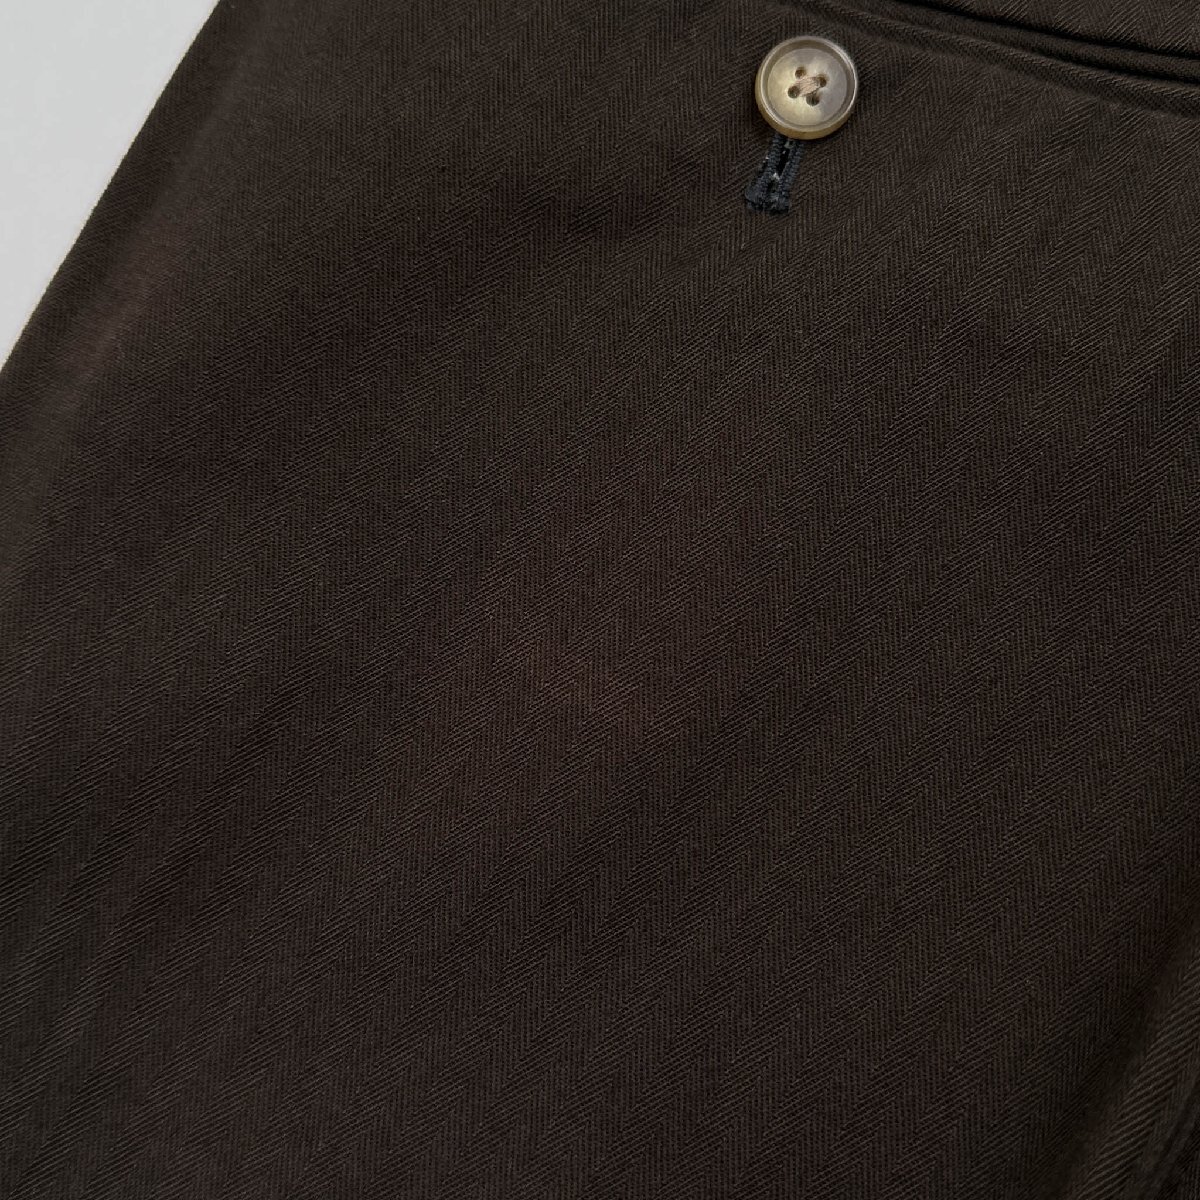 RAIKA INDUSTRY Leica хлопок слаксы брюки размер 50 / подпалина чай темно-коричневый мужской сделано в Японии 